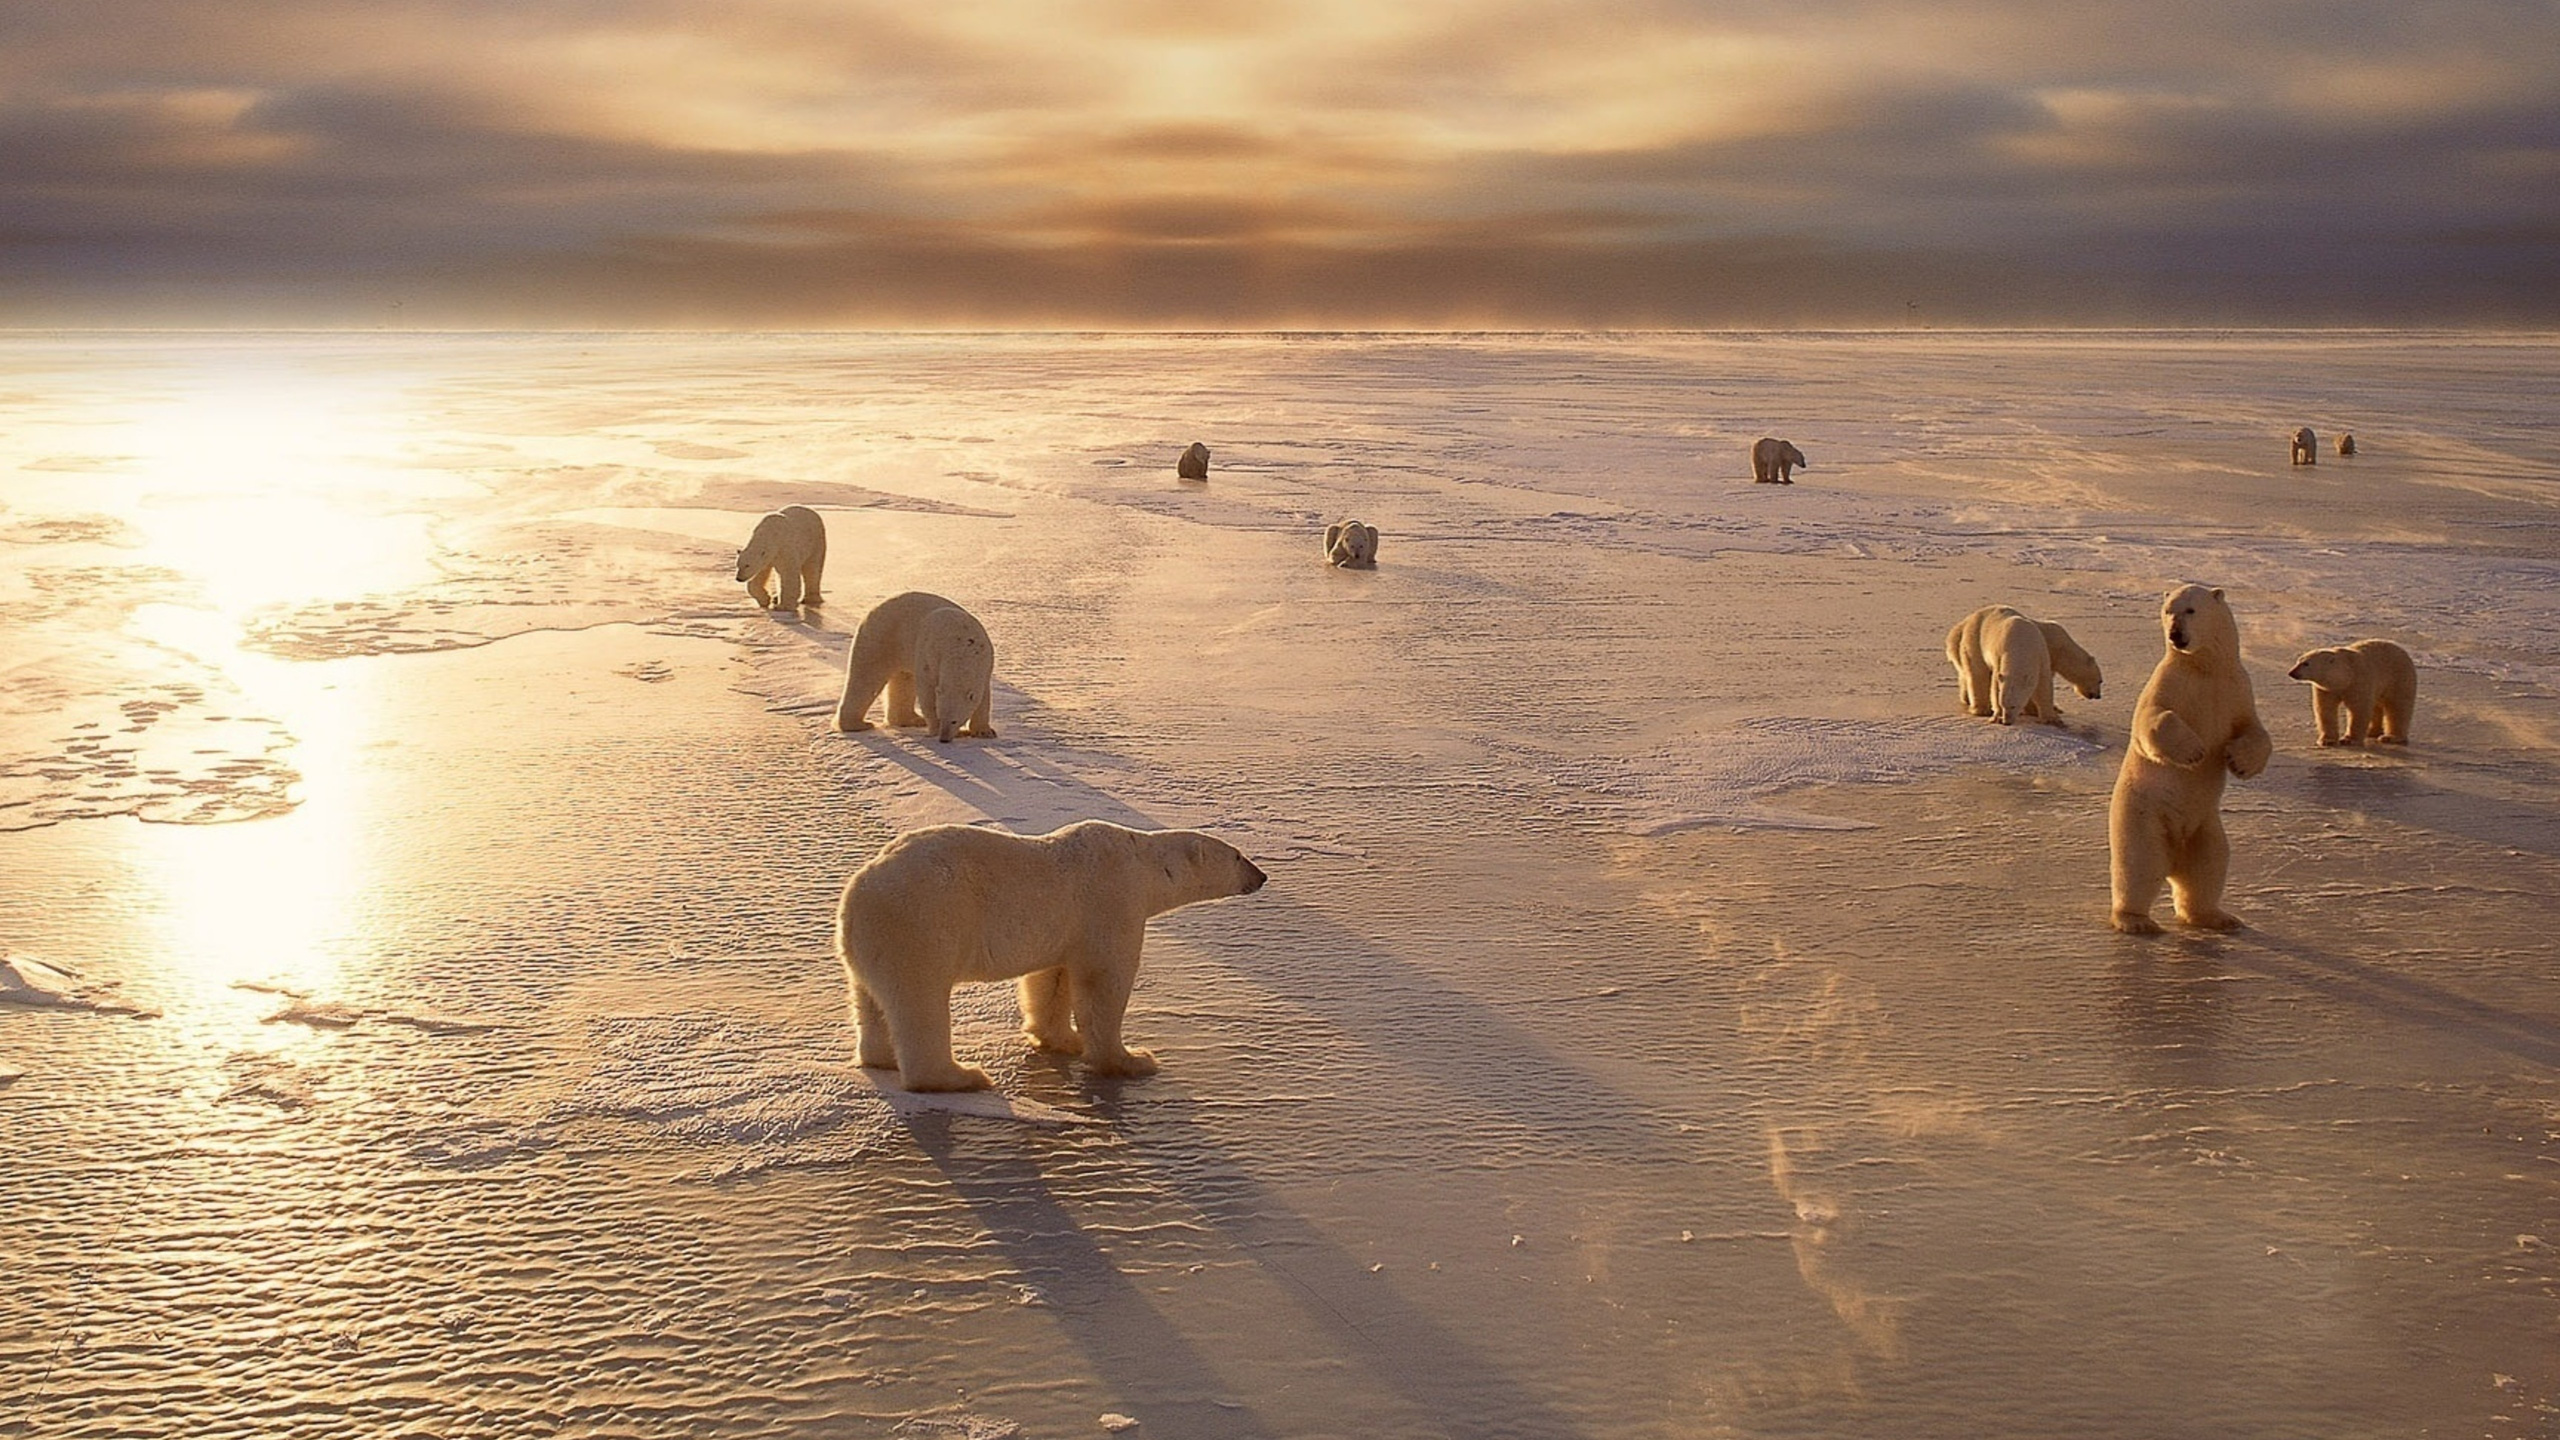 北极熊, 冷静, 沙, 野生动物, 北极 壁纸 2560x1440 允许